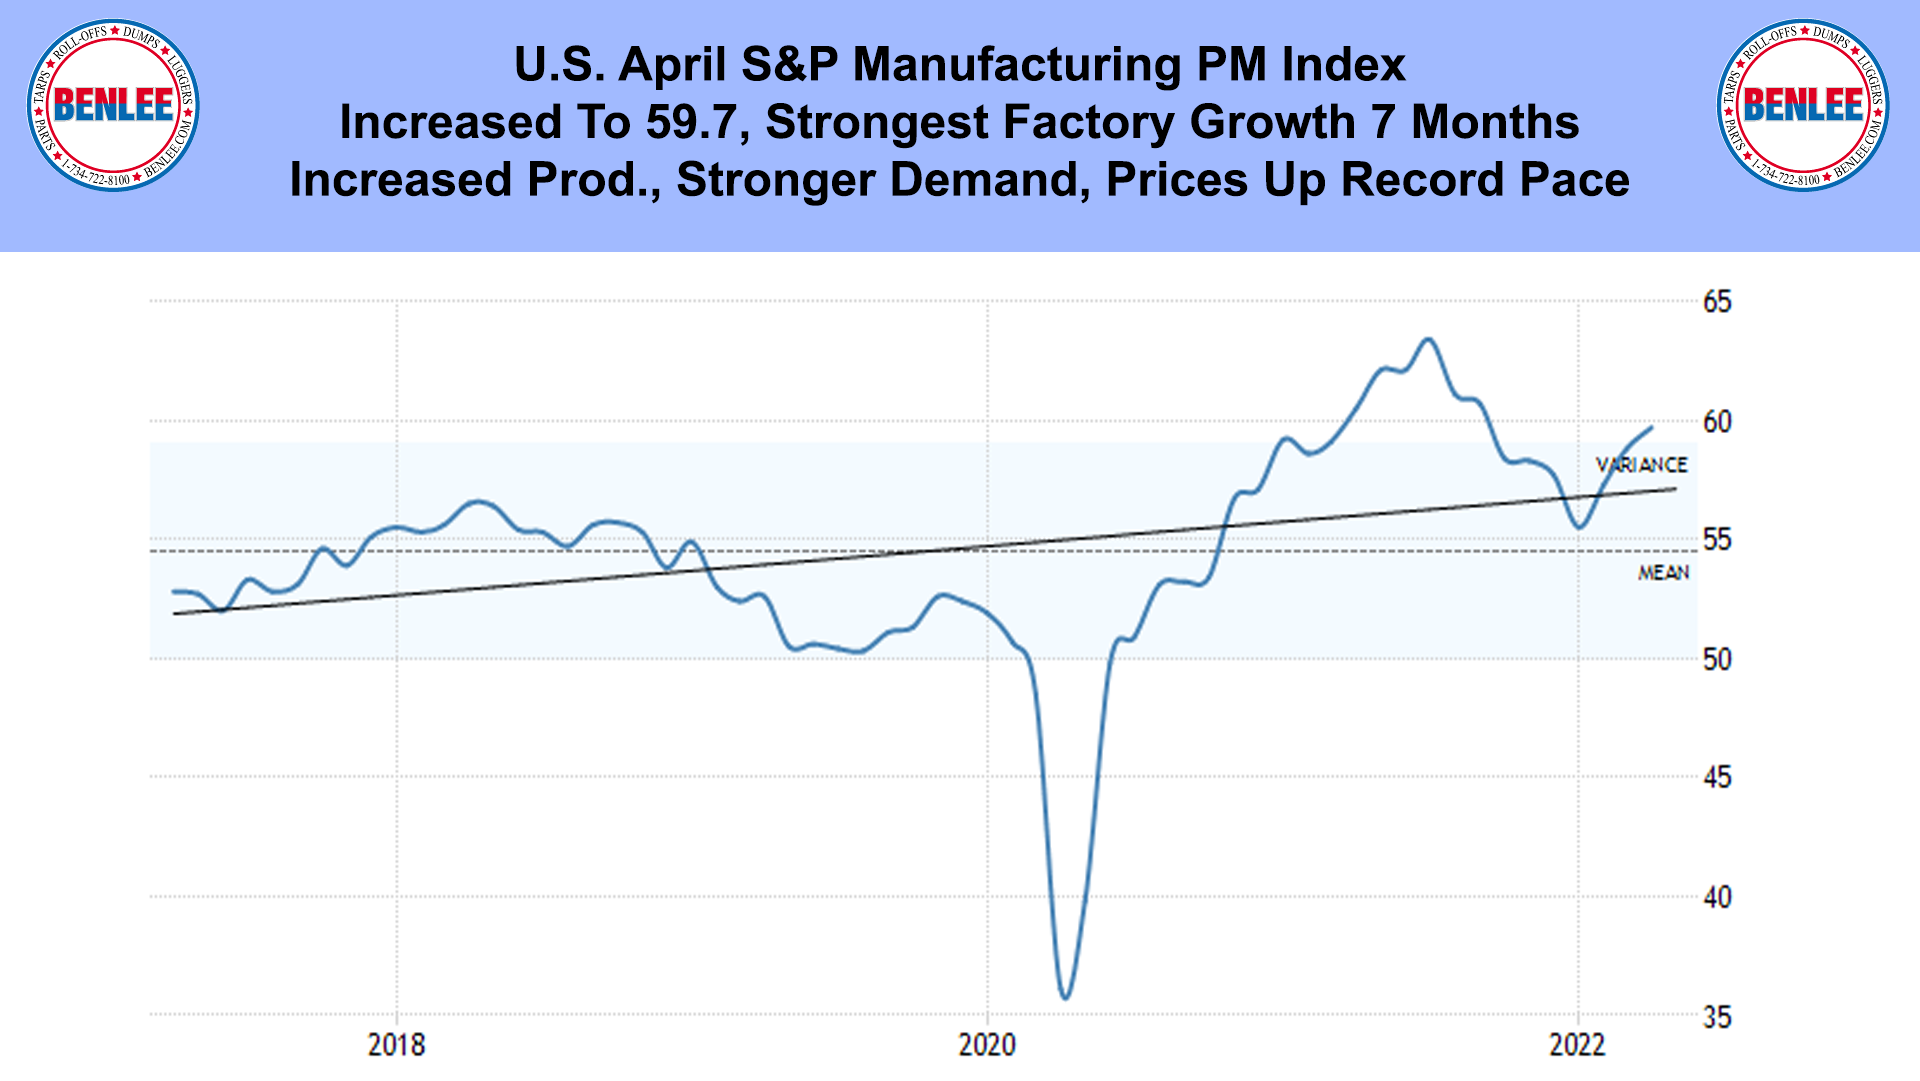 U.S. April S&P Manufacturing PM Index